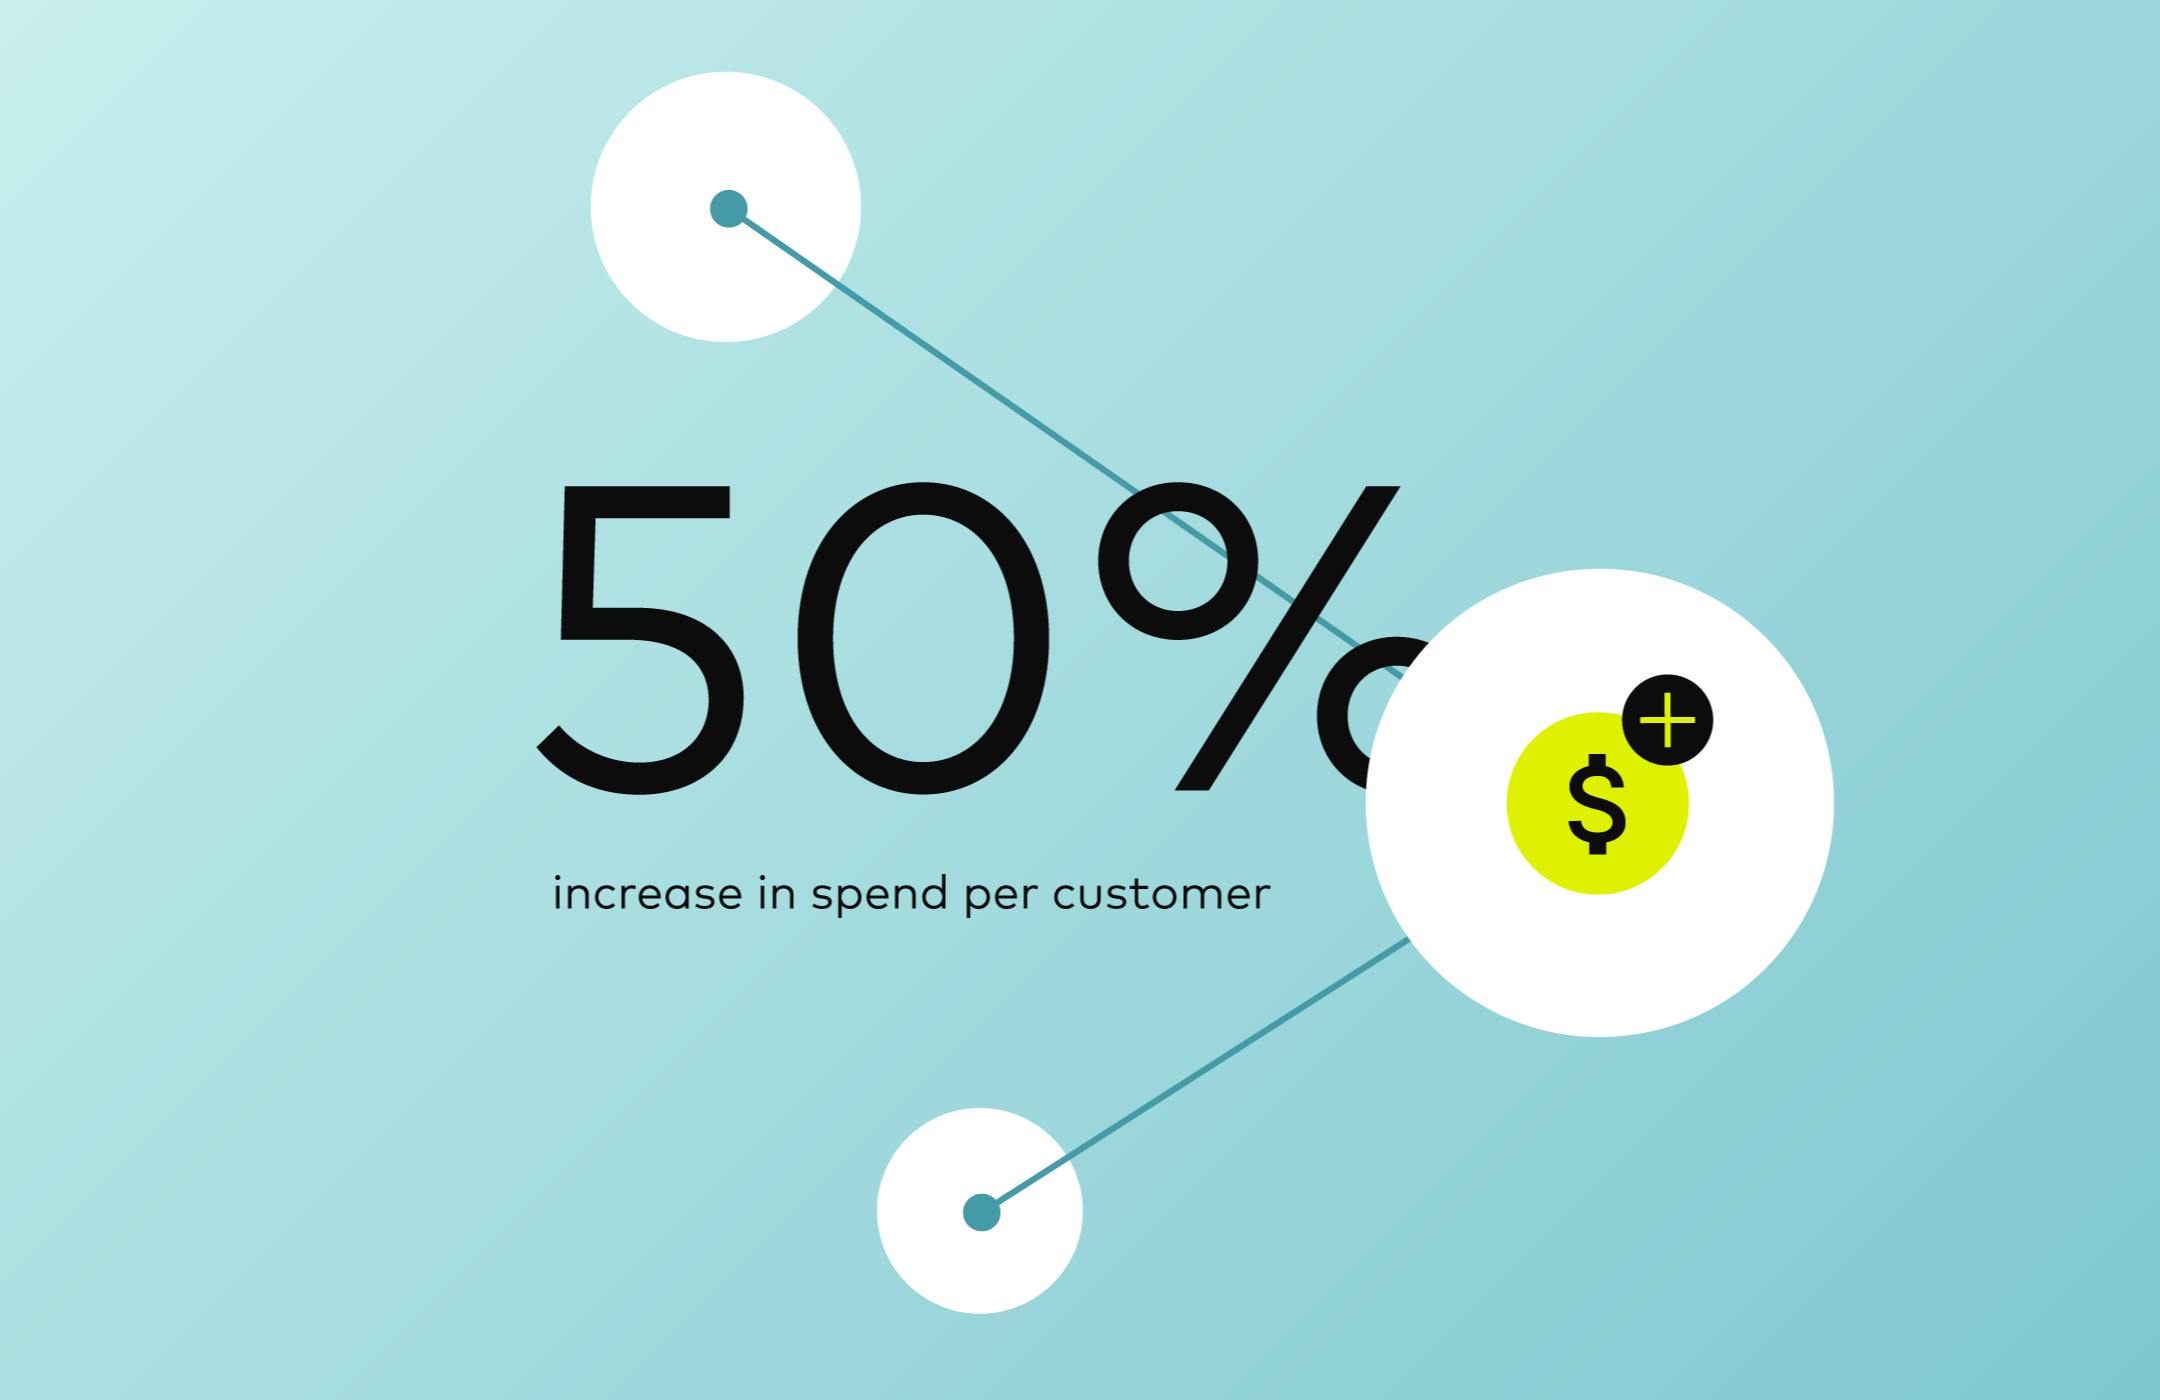 50% increase in spend per customer